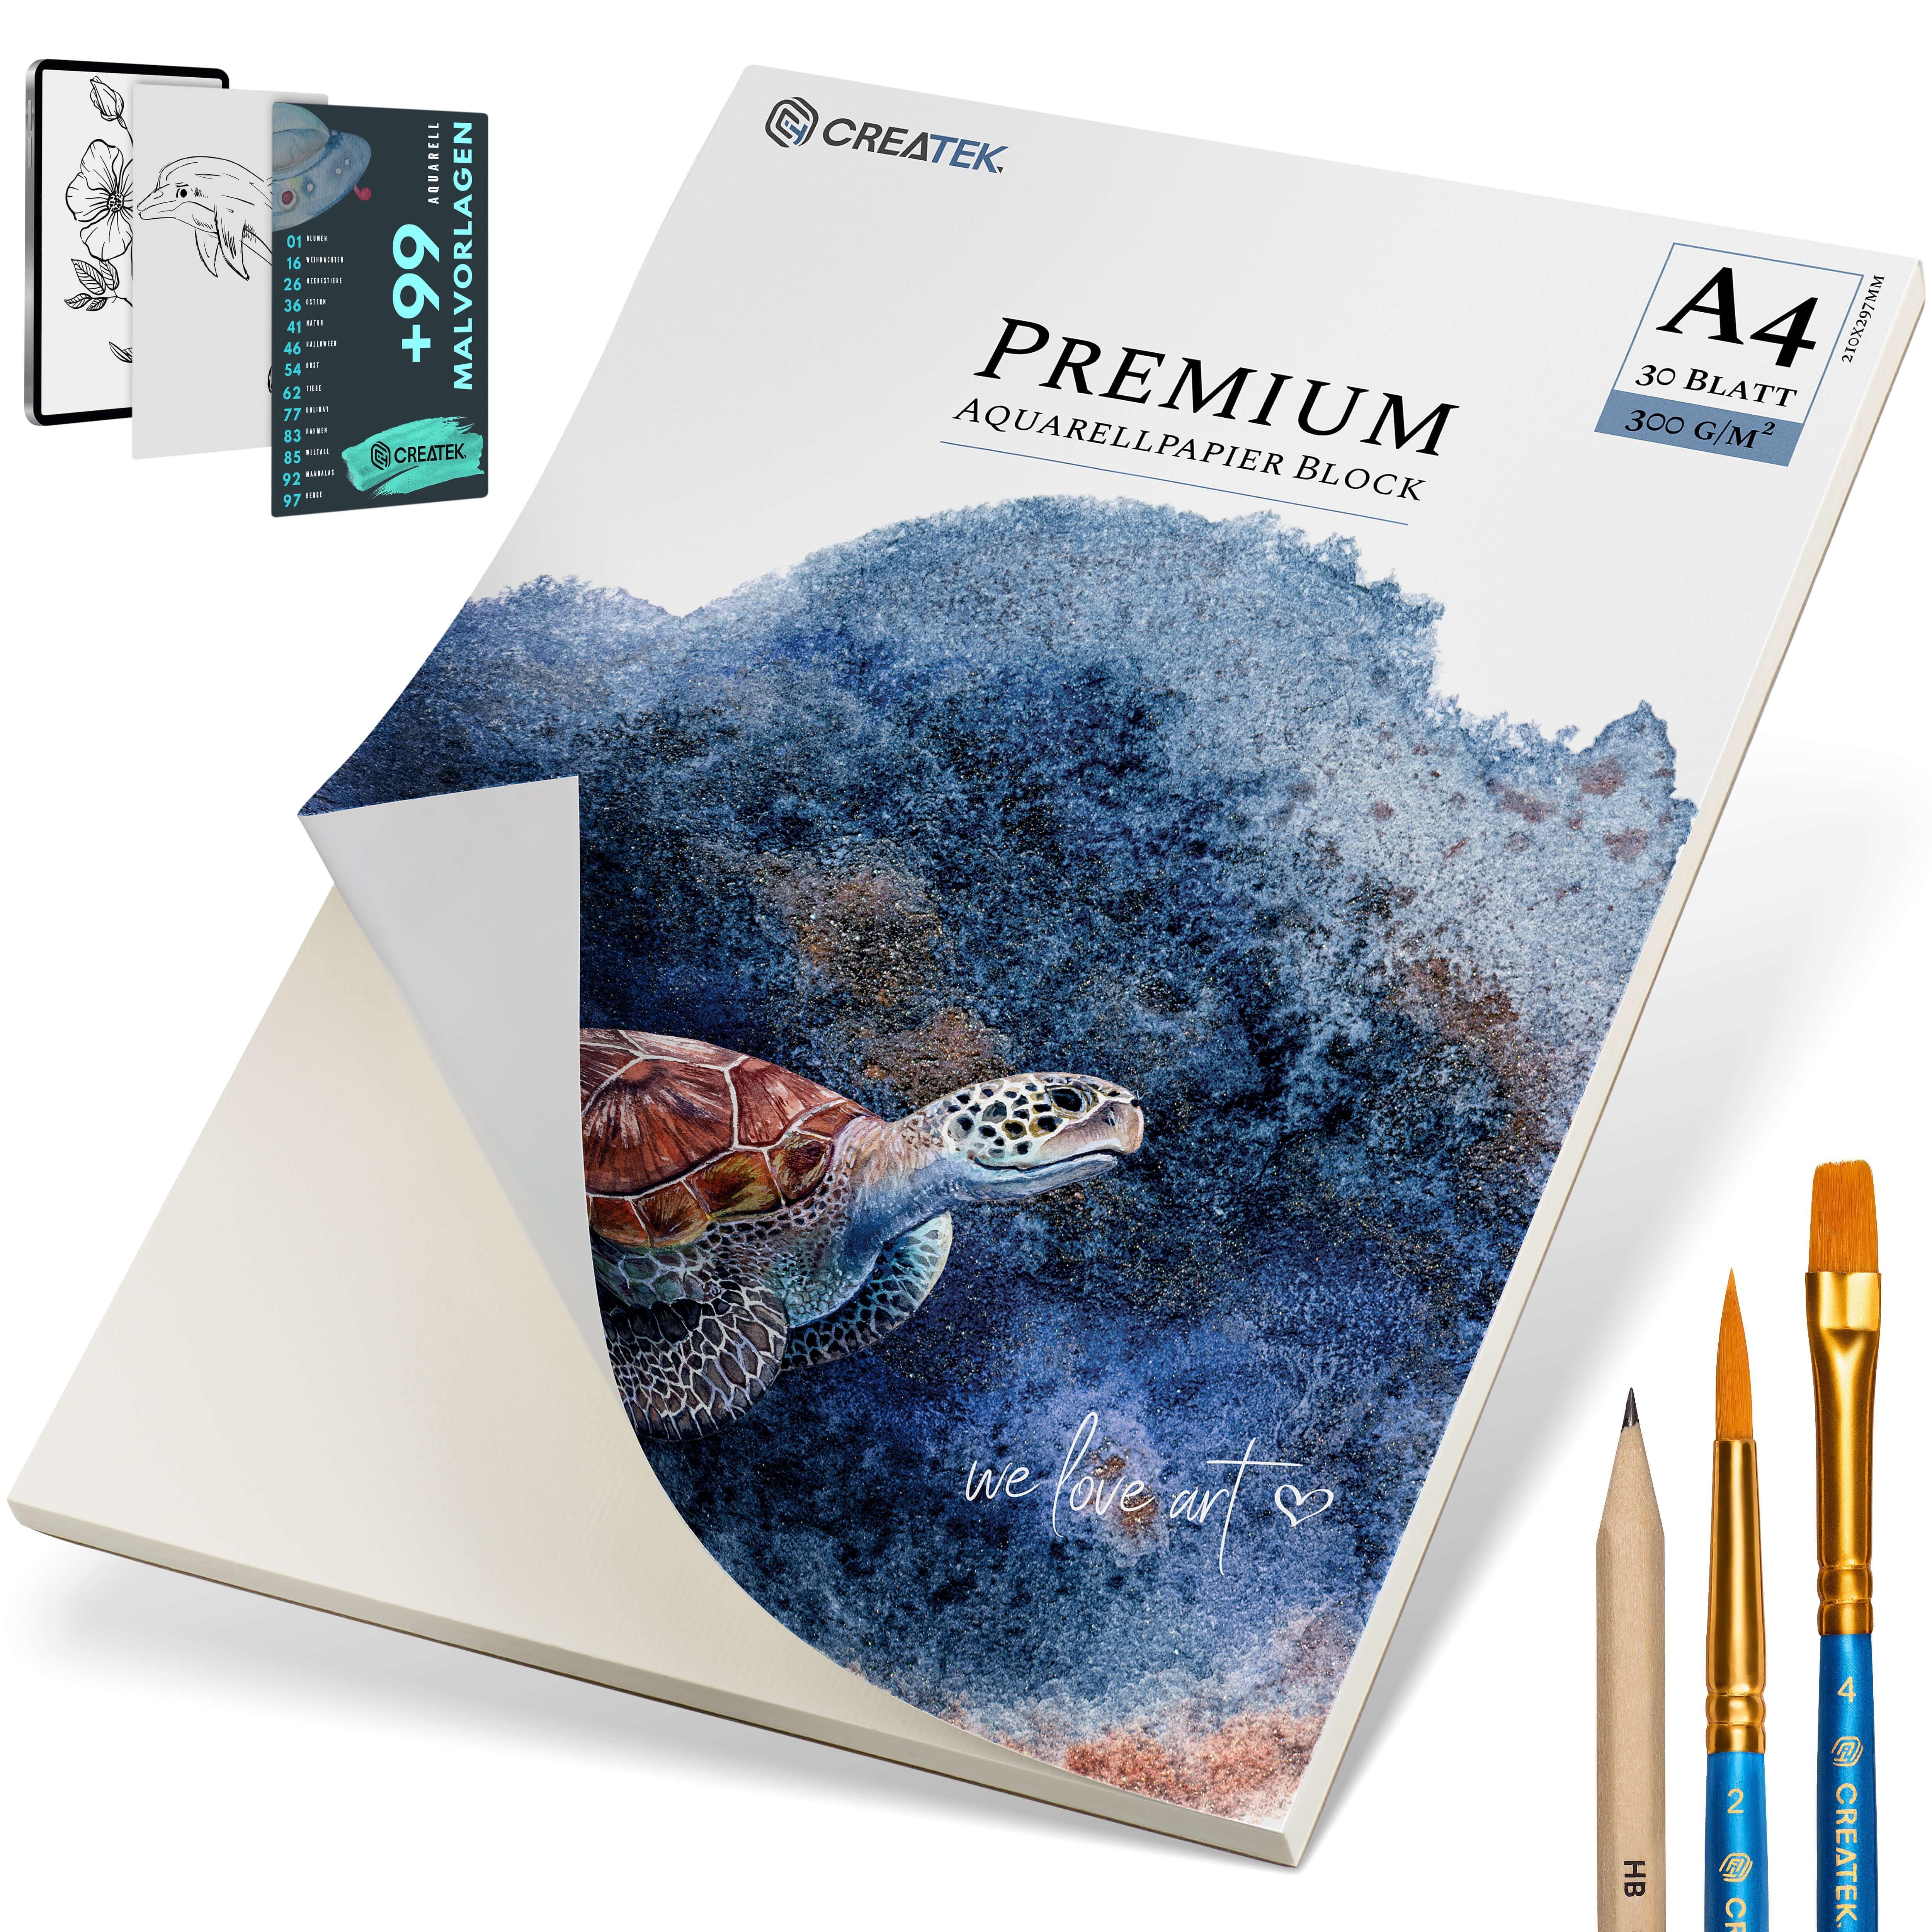 400 Aquarellpapier - Größen Premium VIDEOKURS CreaTek inkl. 2 + MALVORLAGEN 300g uvm., & diverse Bleistift Qualität STUNDEN Pinsel